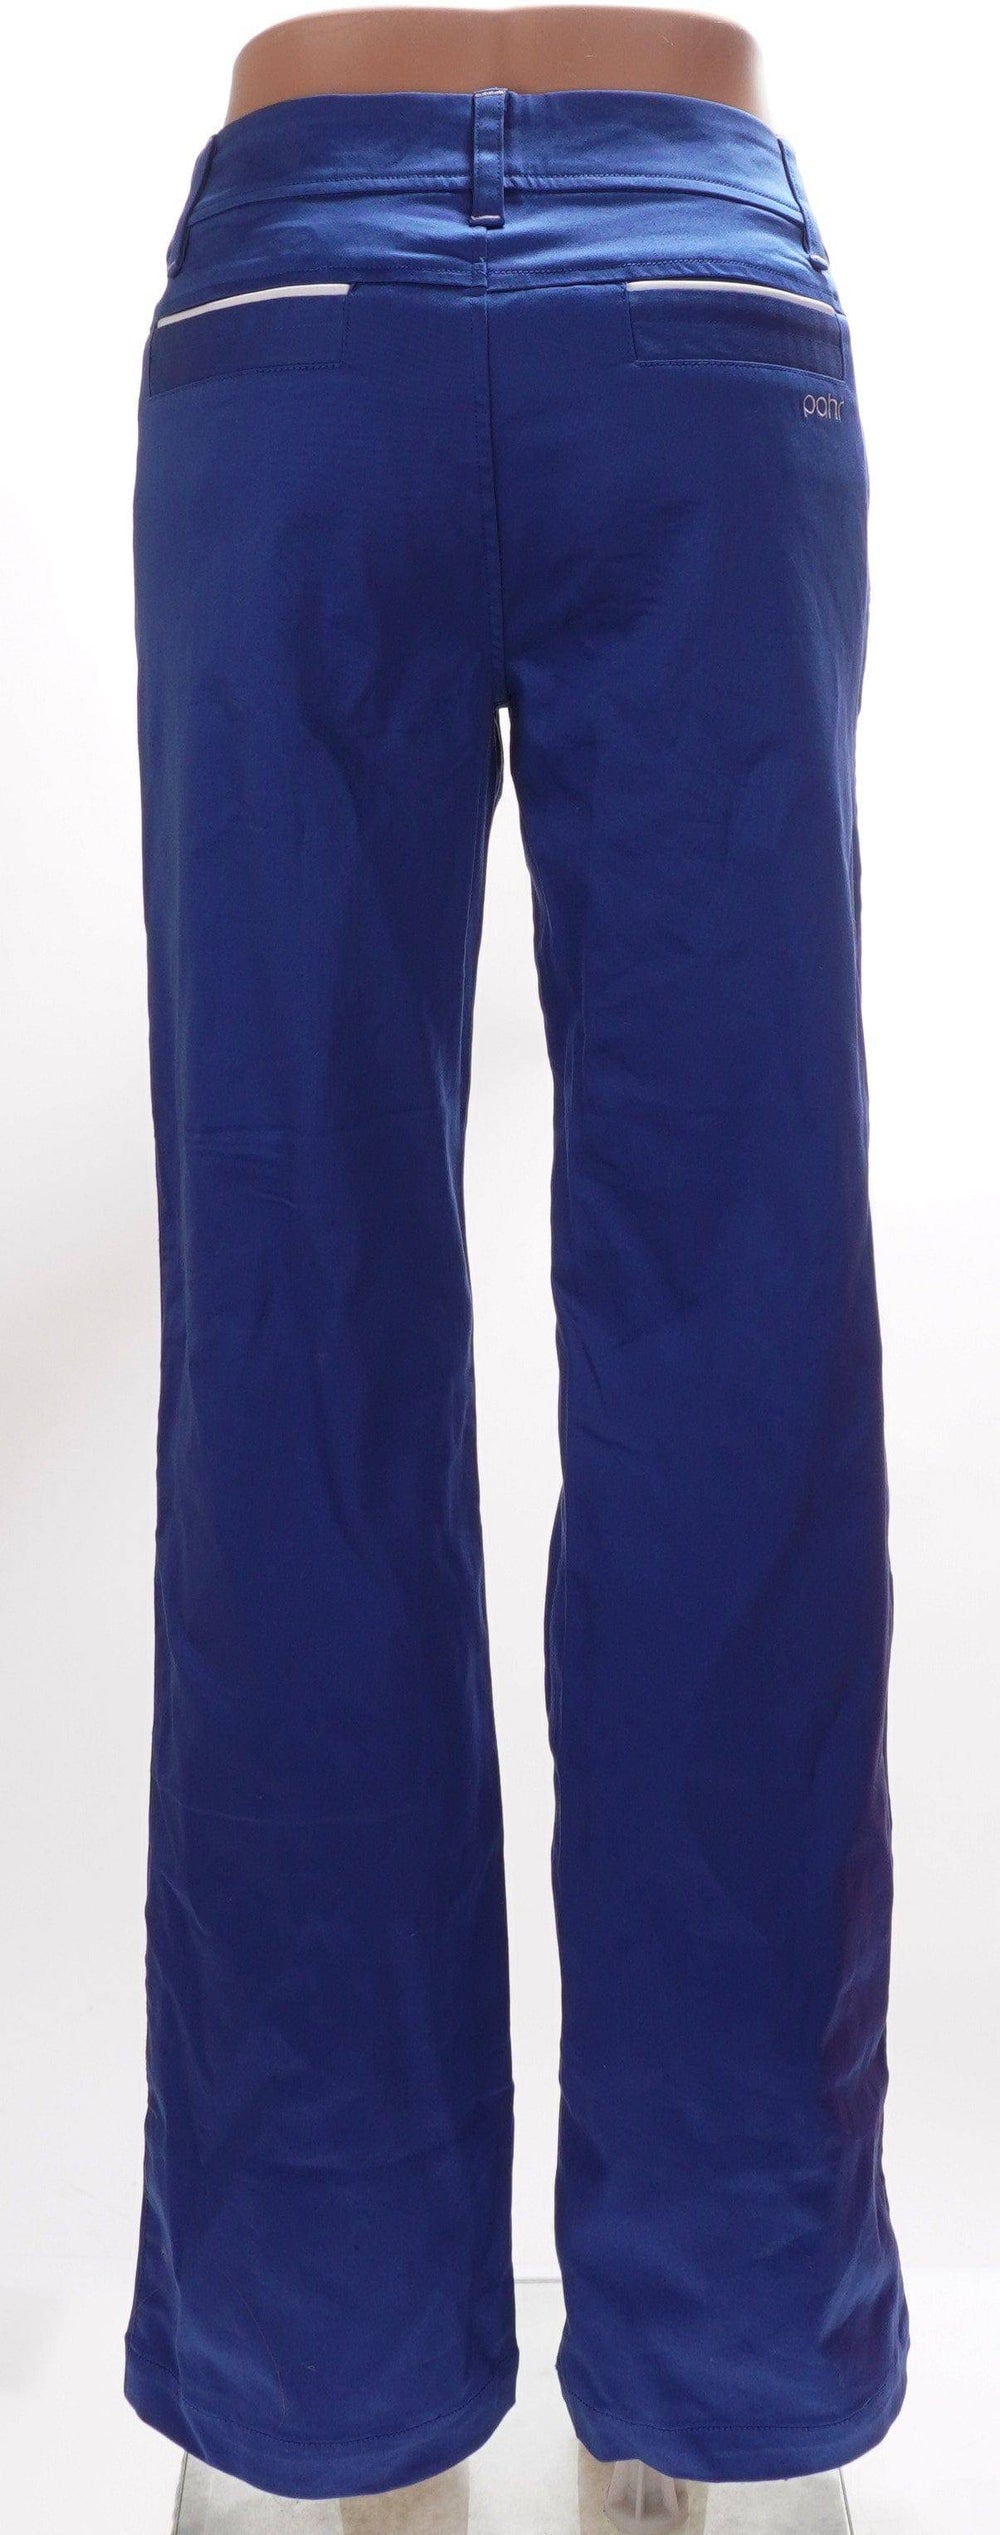 Pahr Blue / 4 / Consigned Pahr Blue Pants - Size 4 Apparel & Accessories